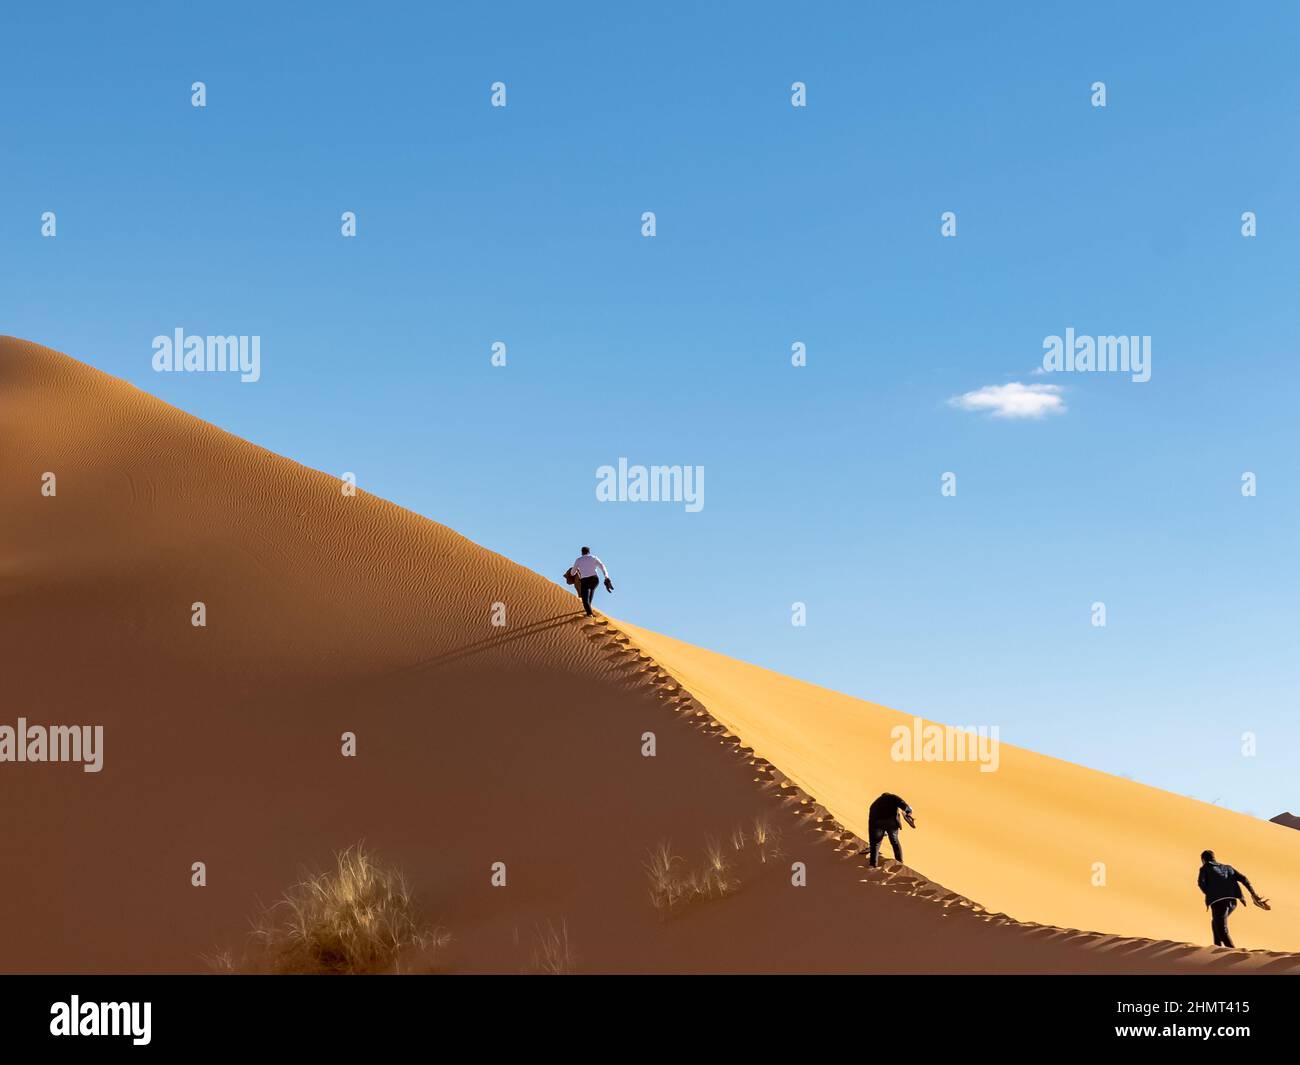 Les touristes méconnaissables grimpent avec difficulté le long de la crête d'une dune de sable élevée, faisant des efforts, tenant leurs chaussures. Vue en angle bas depuis l'arrière. Banque D'Images